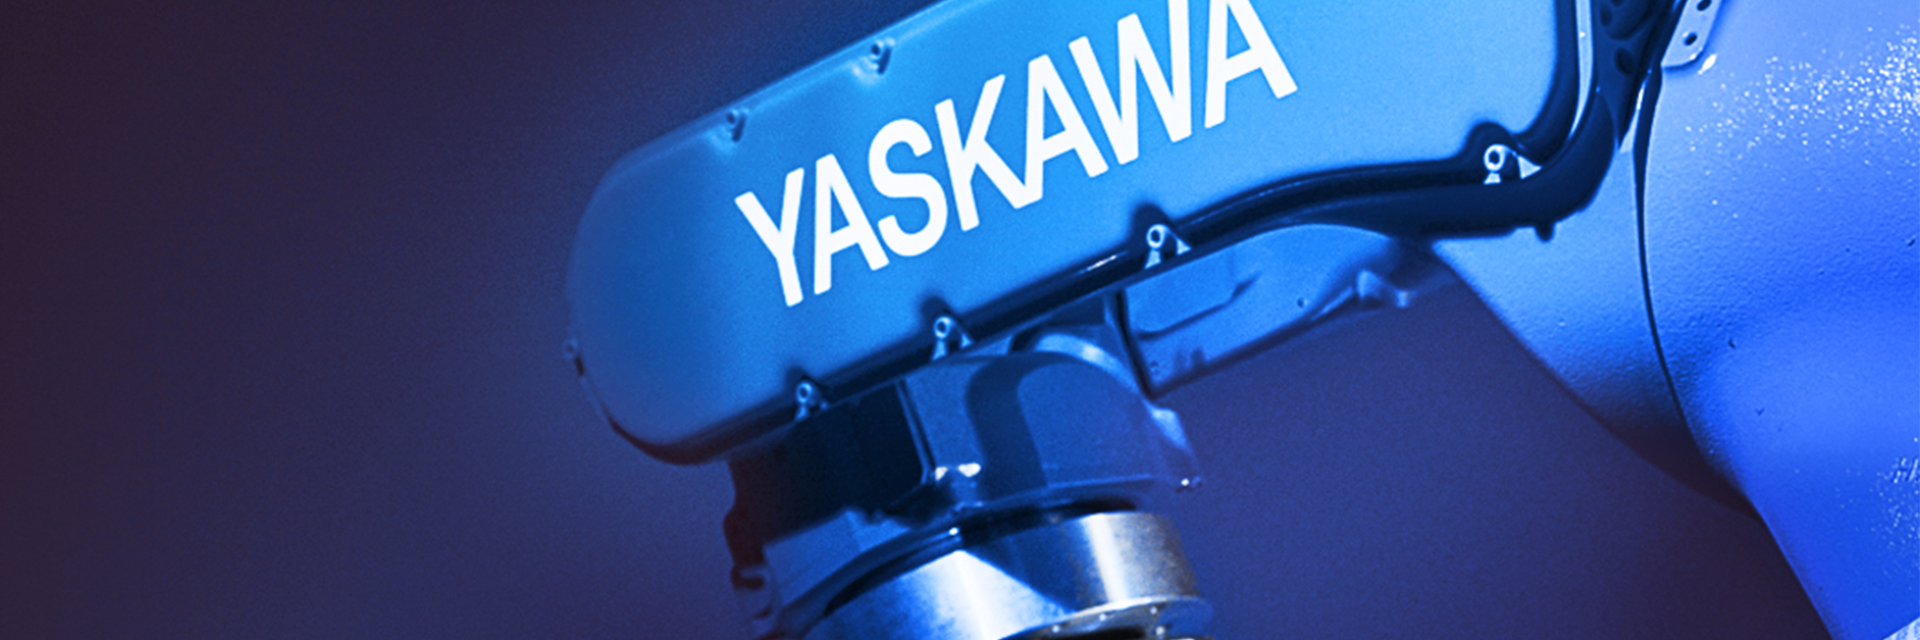 Case Study: Yaskawa Europe GmbH - Impression #1